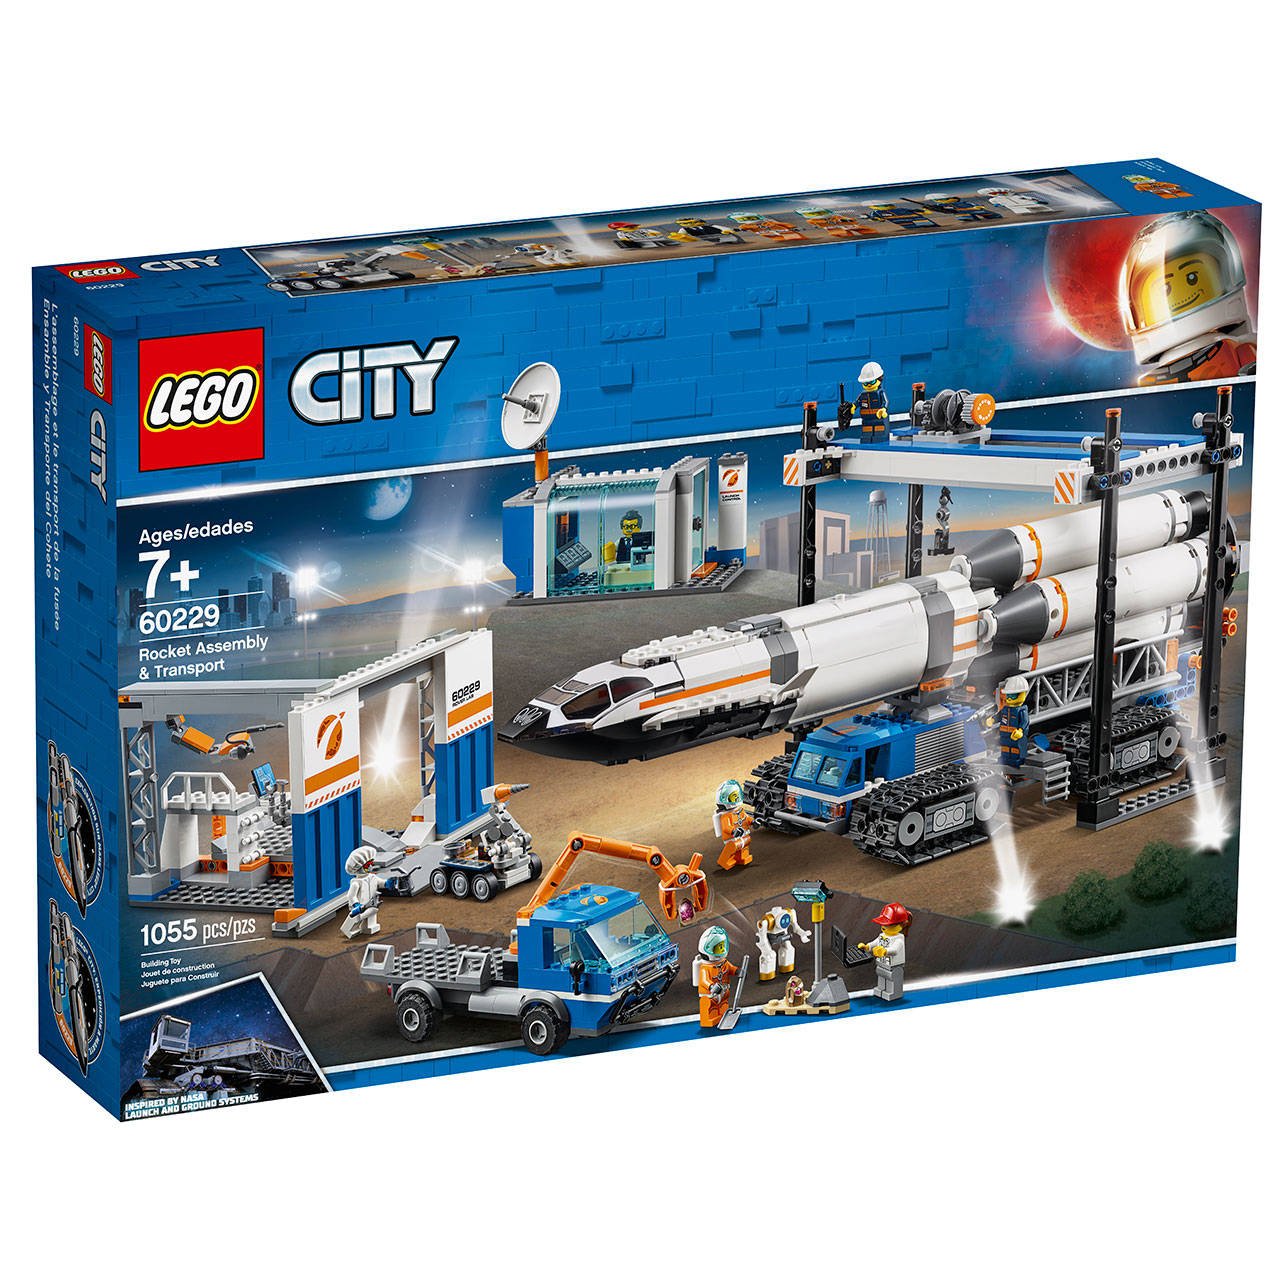 Immagine di Lego CITY, variante SPACE: ed ora anche la ISS